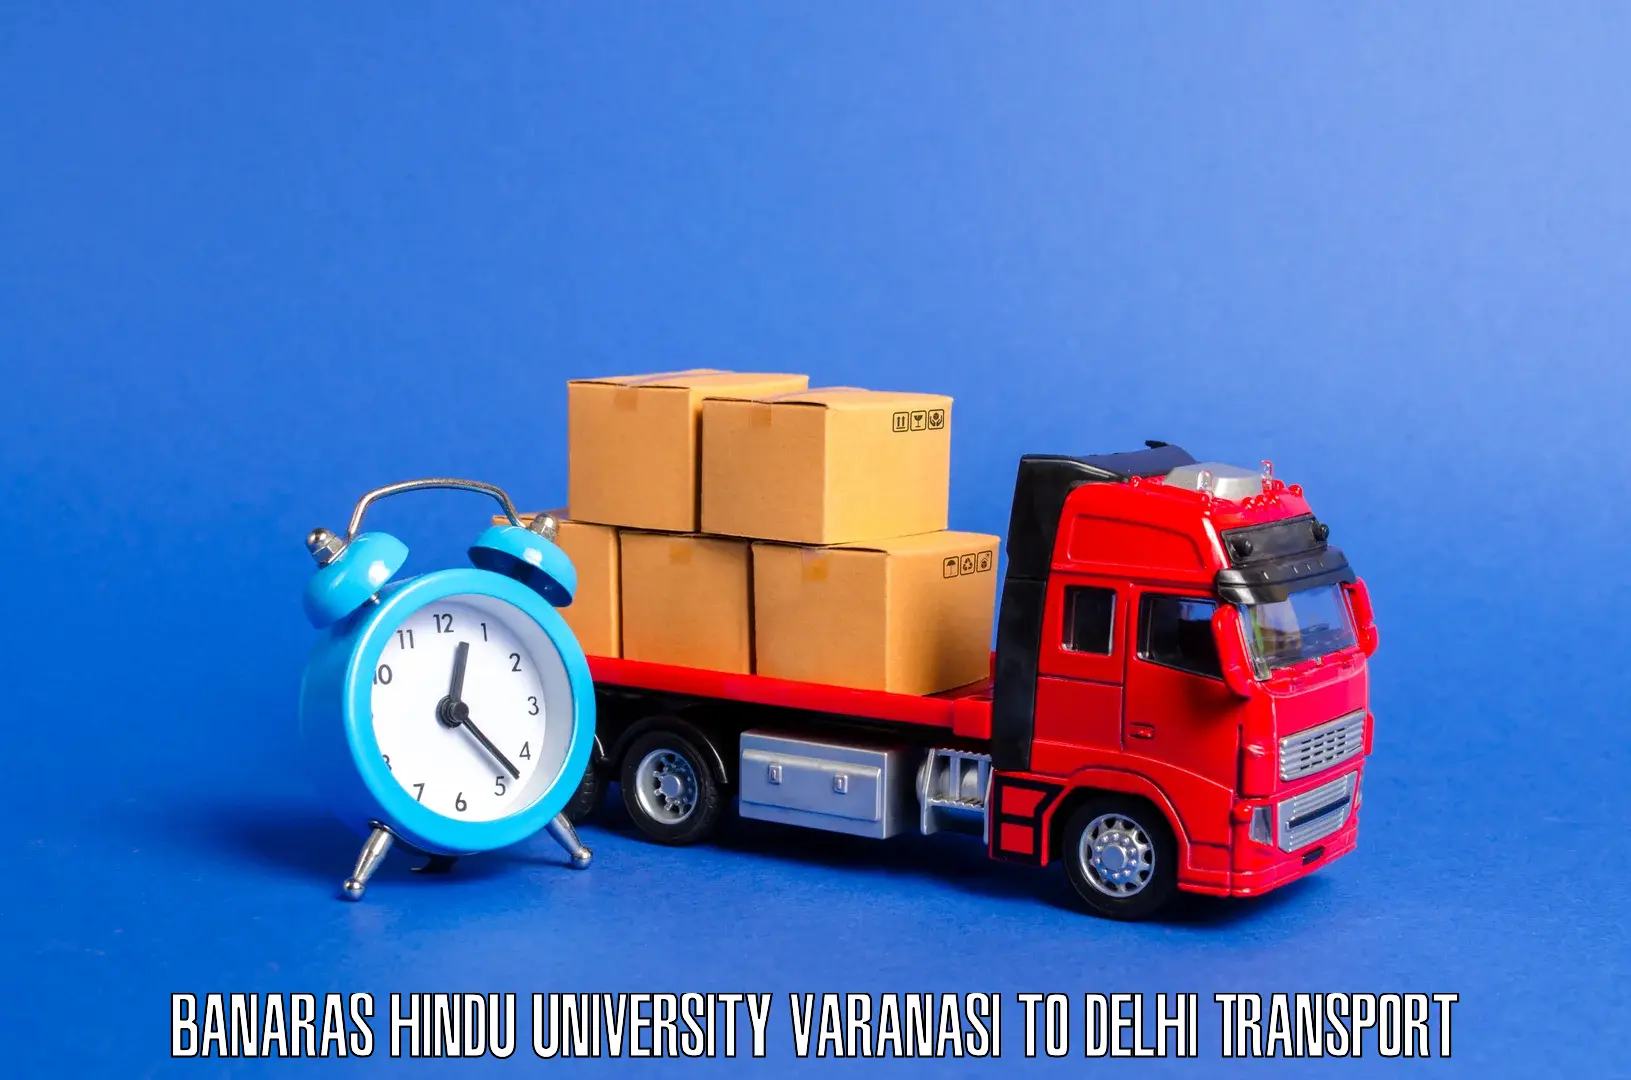 Interstate transport services Banaras Hindu University Varanasi to Delhi